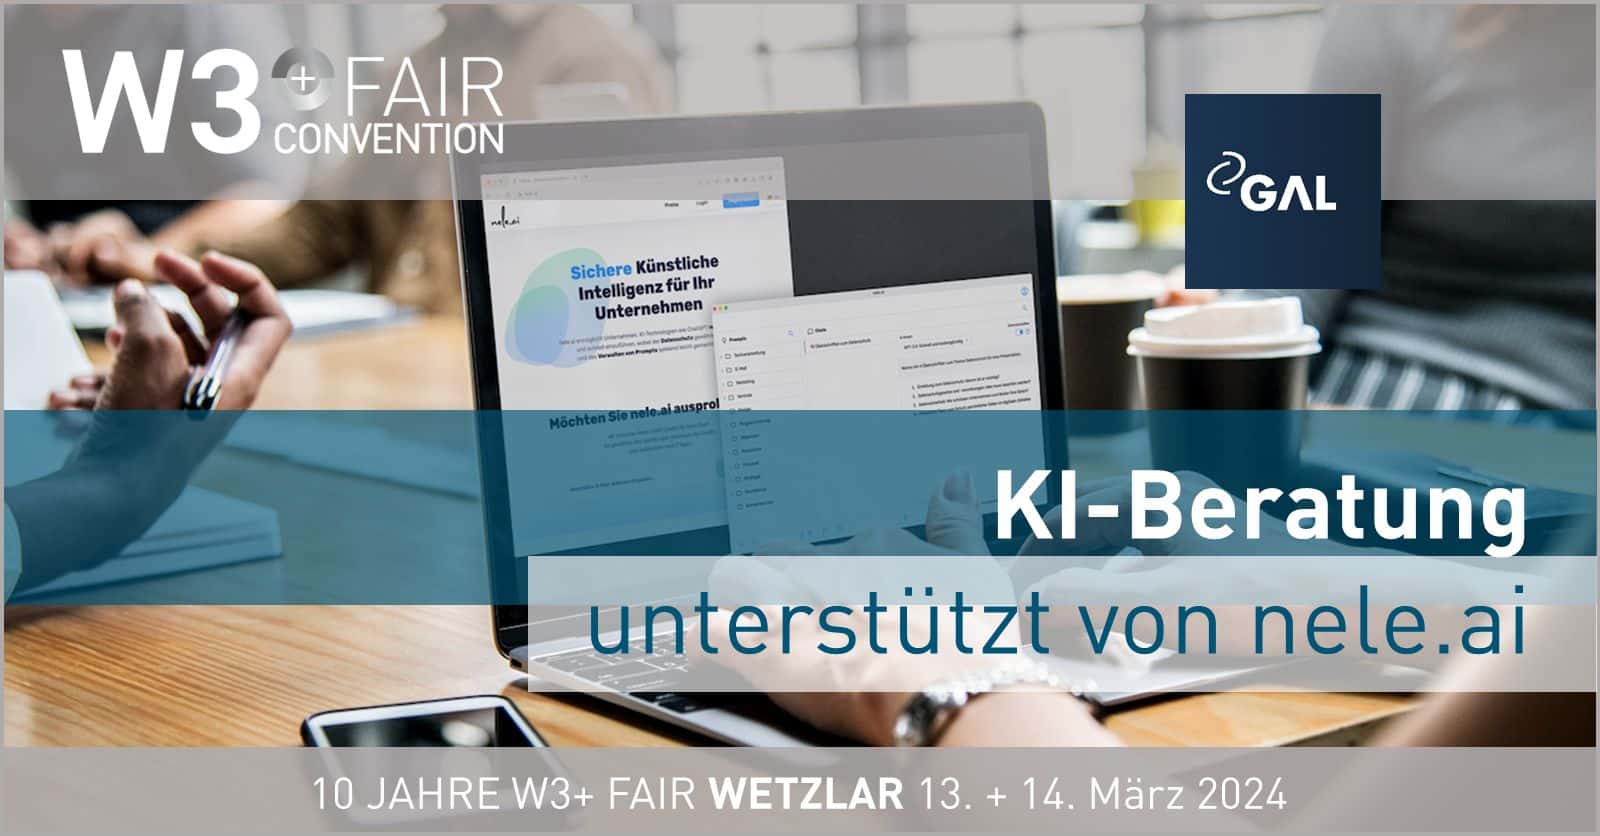 KI-Beratung mit nele.ai auf der W3+ Fair Wetzlar 2024